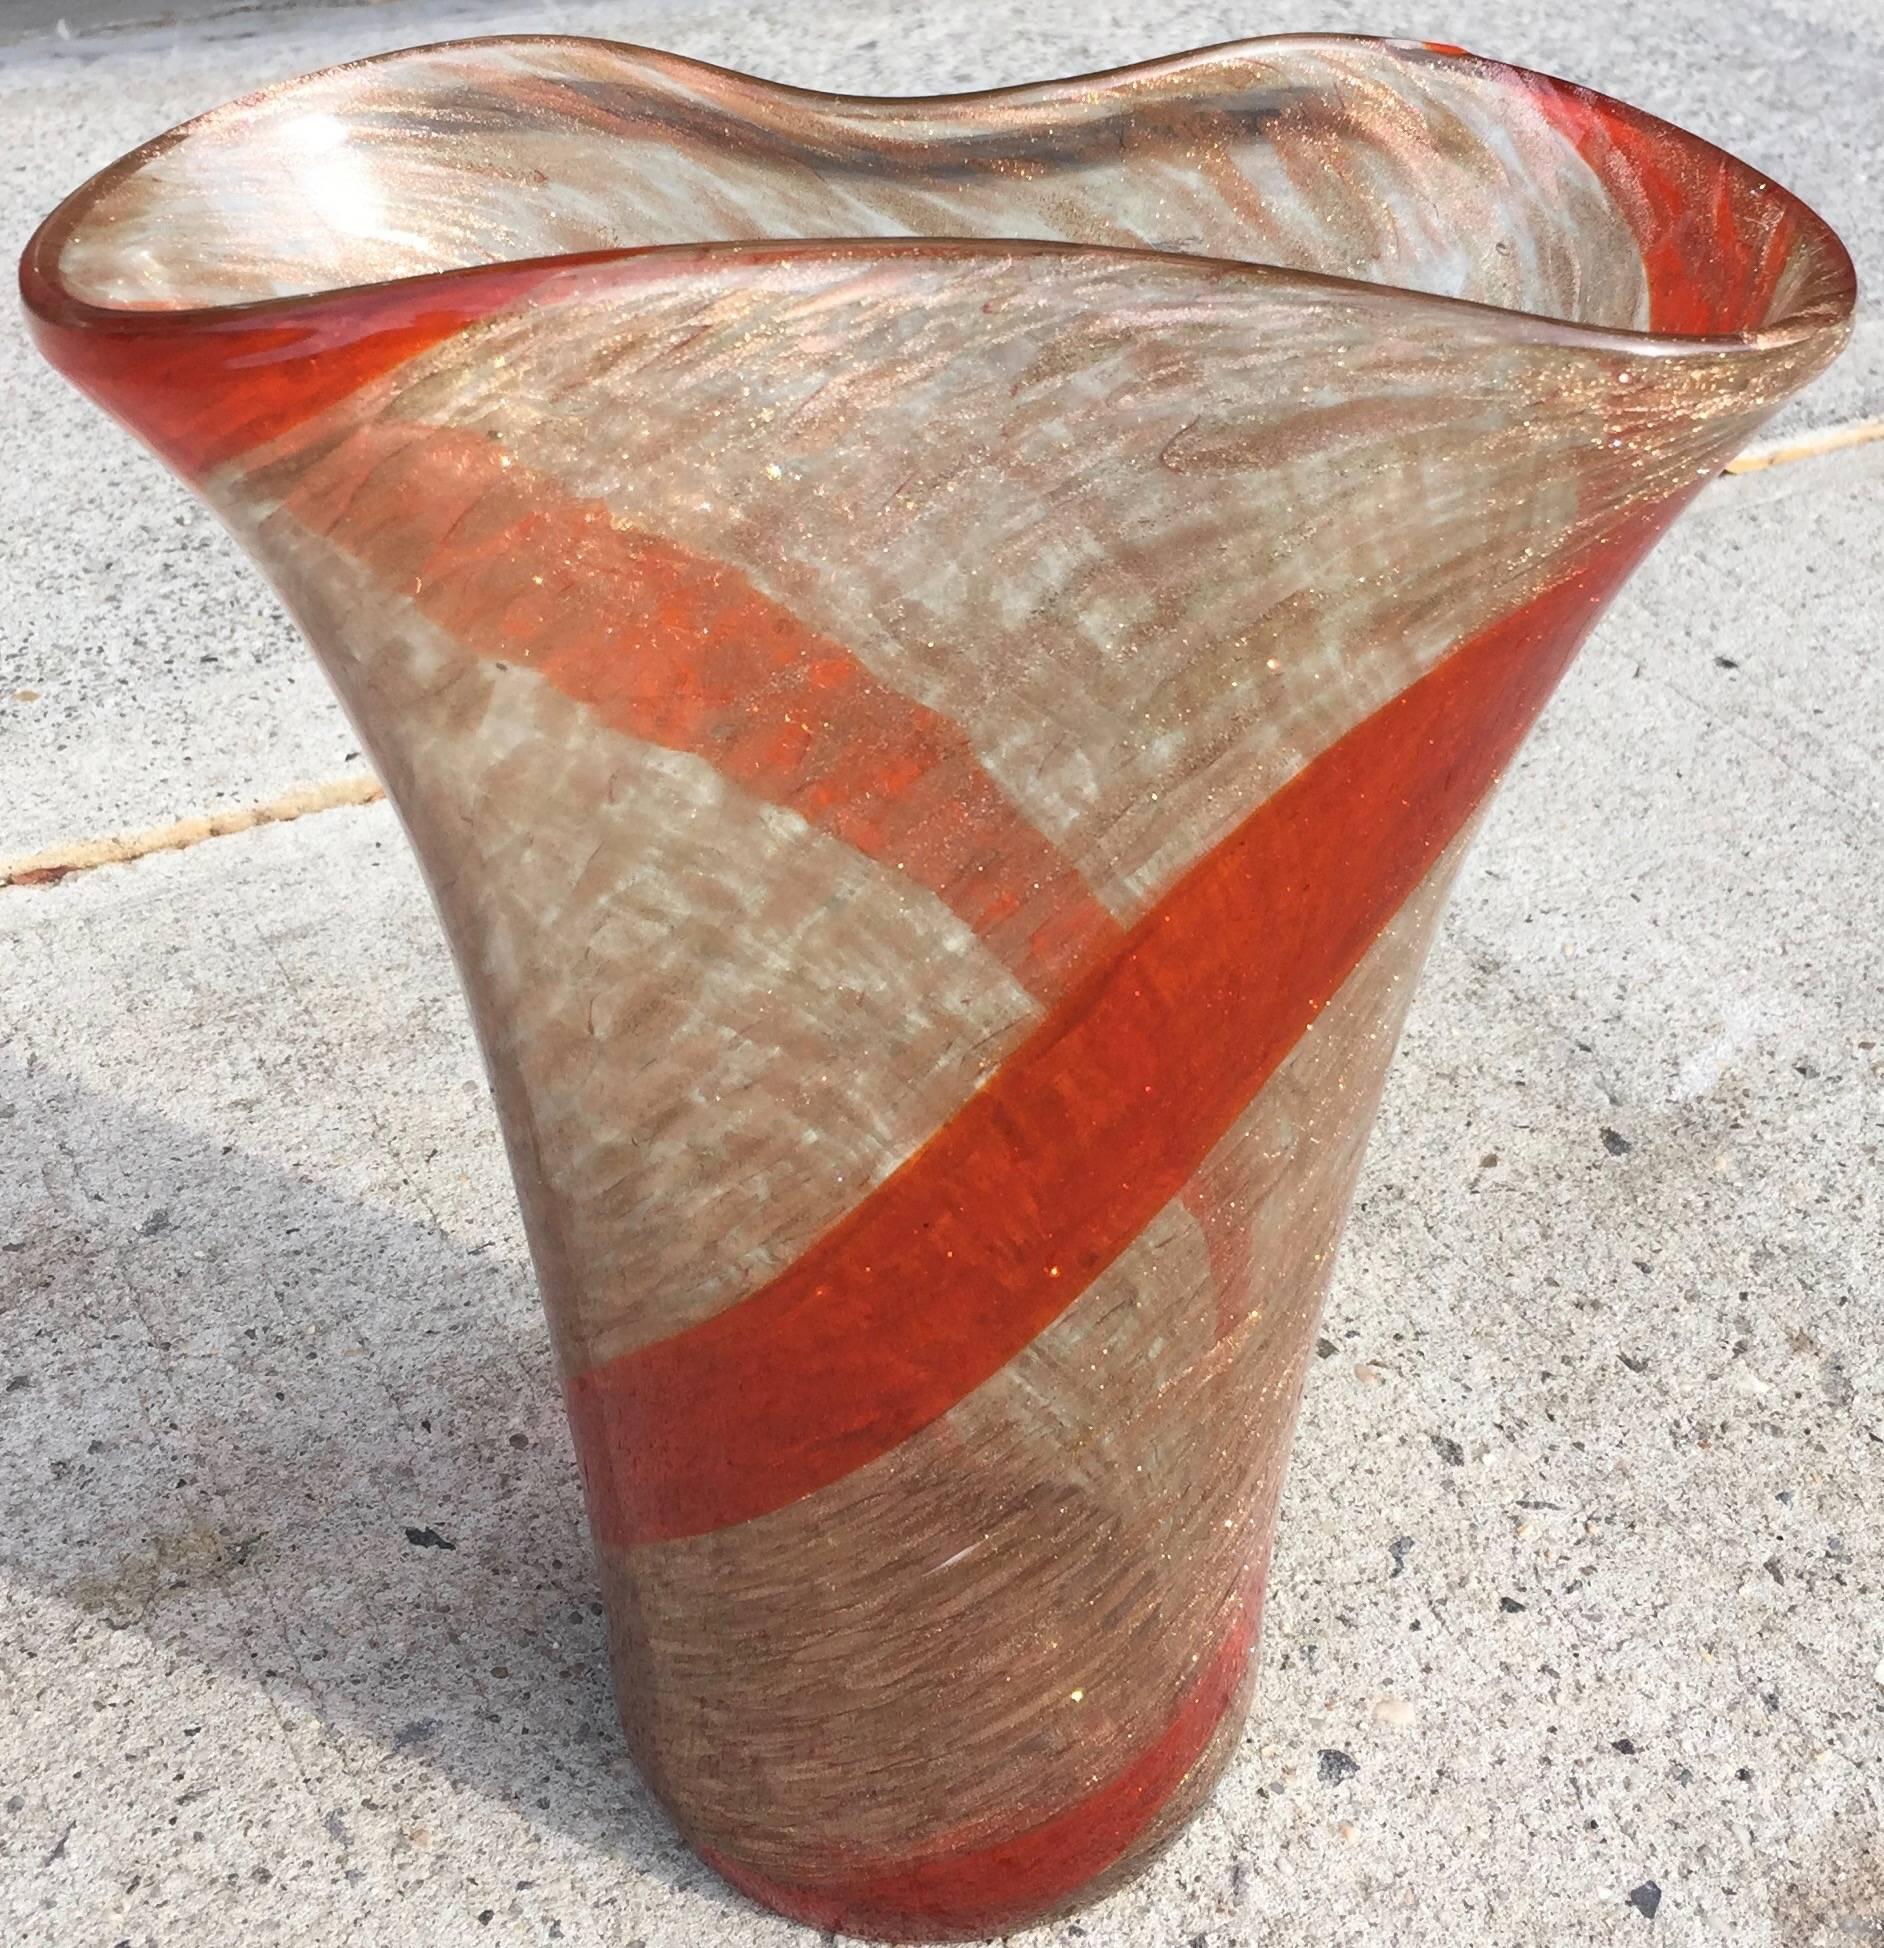 Grand vase pincé à lèvres évasées avec des bandes rouges croisées et des inclusions de poussière de cuivre. Étiquette Murano sur le dessous.